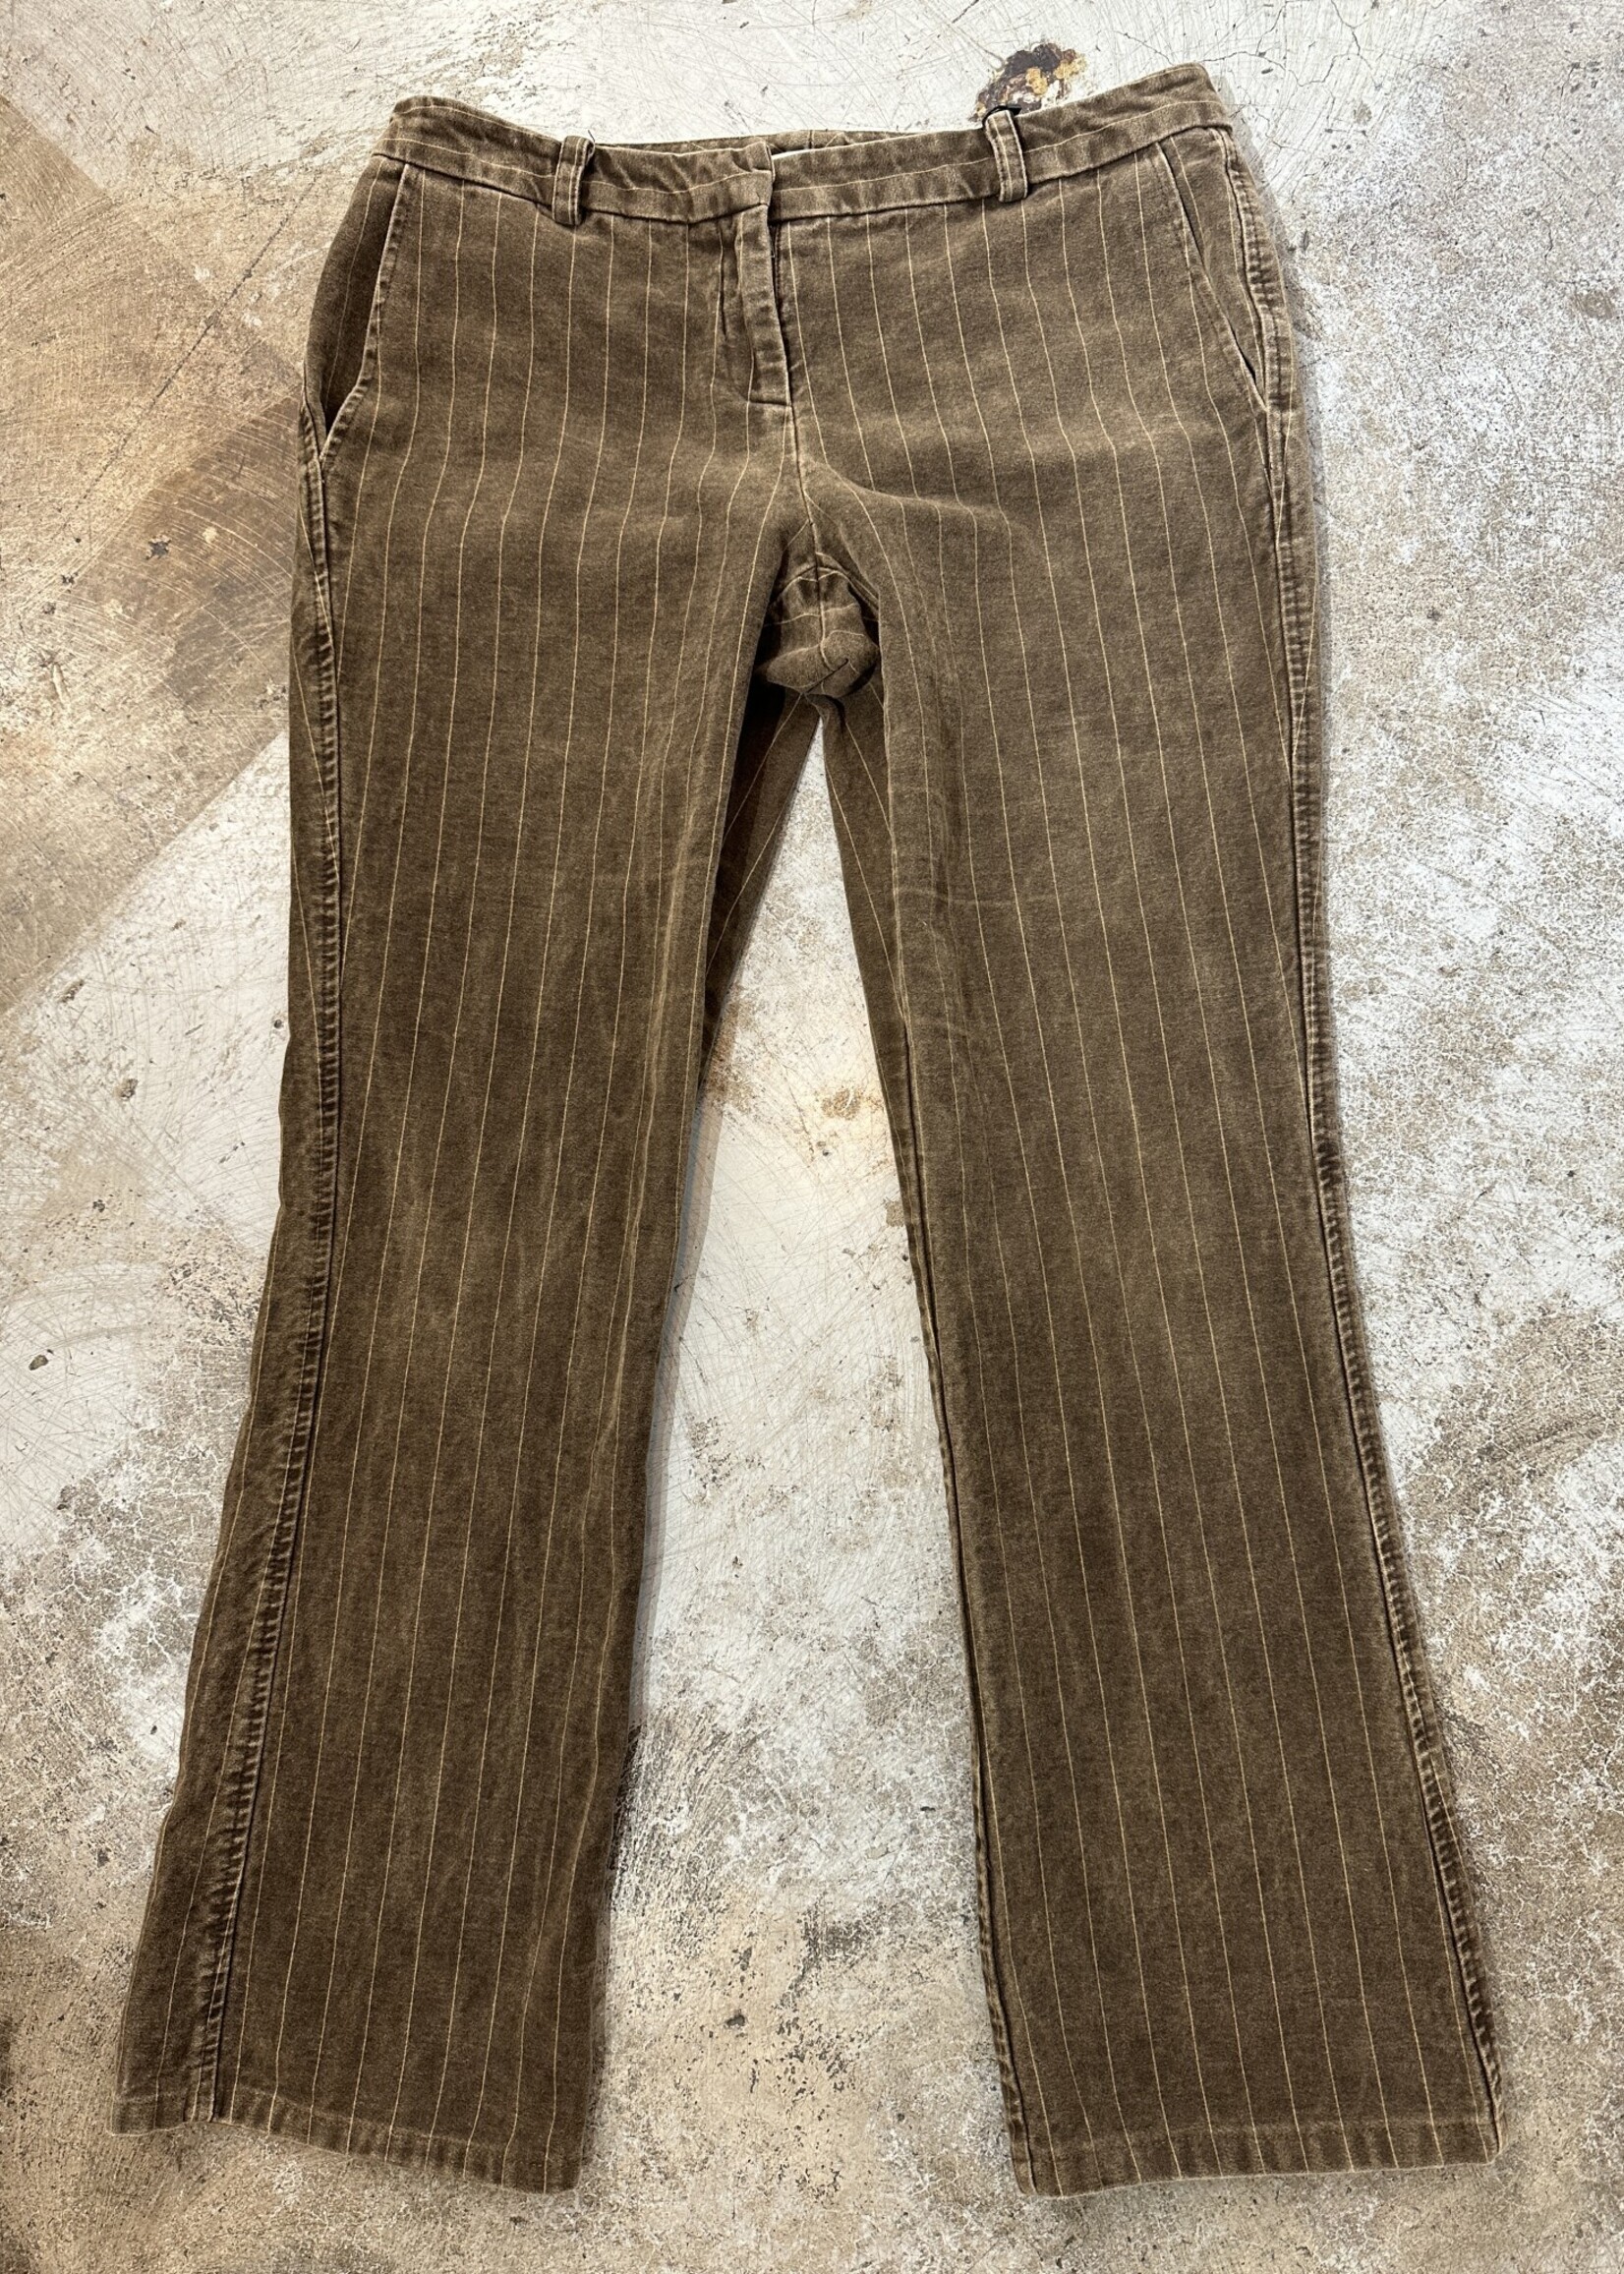 Liquid Y2K Brown Pinstripe Pants FEM 30